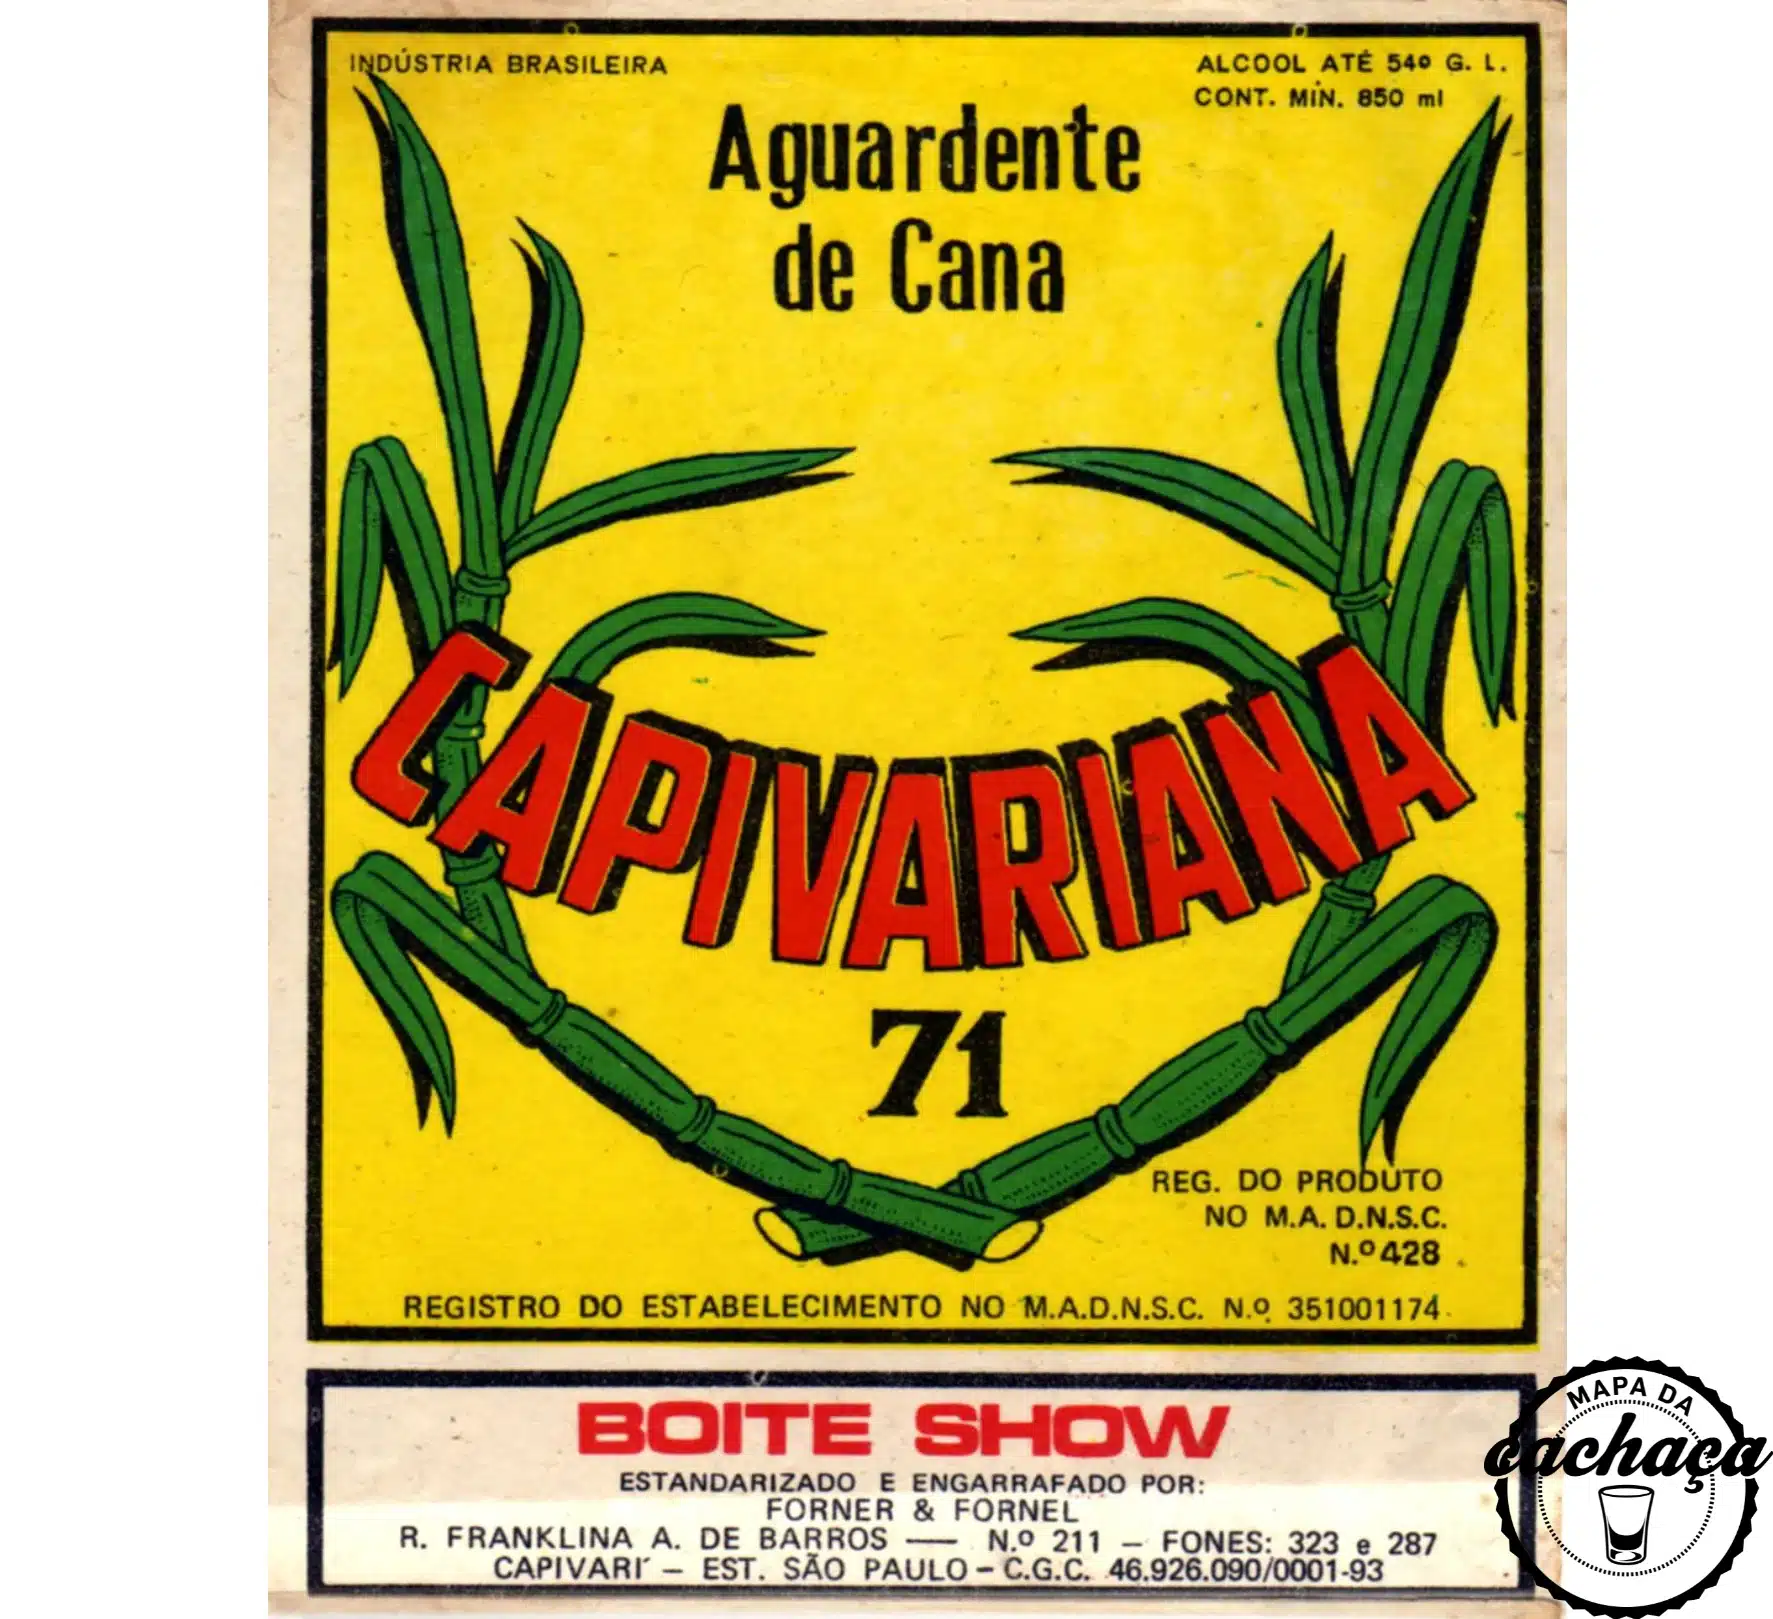 Rótulo da cachaça Capivariana 71